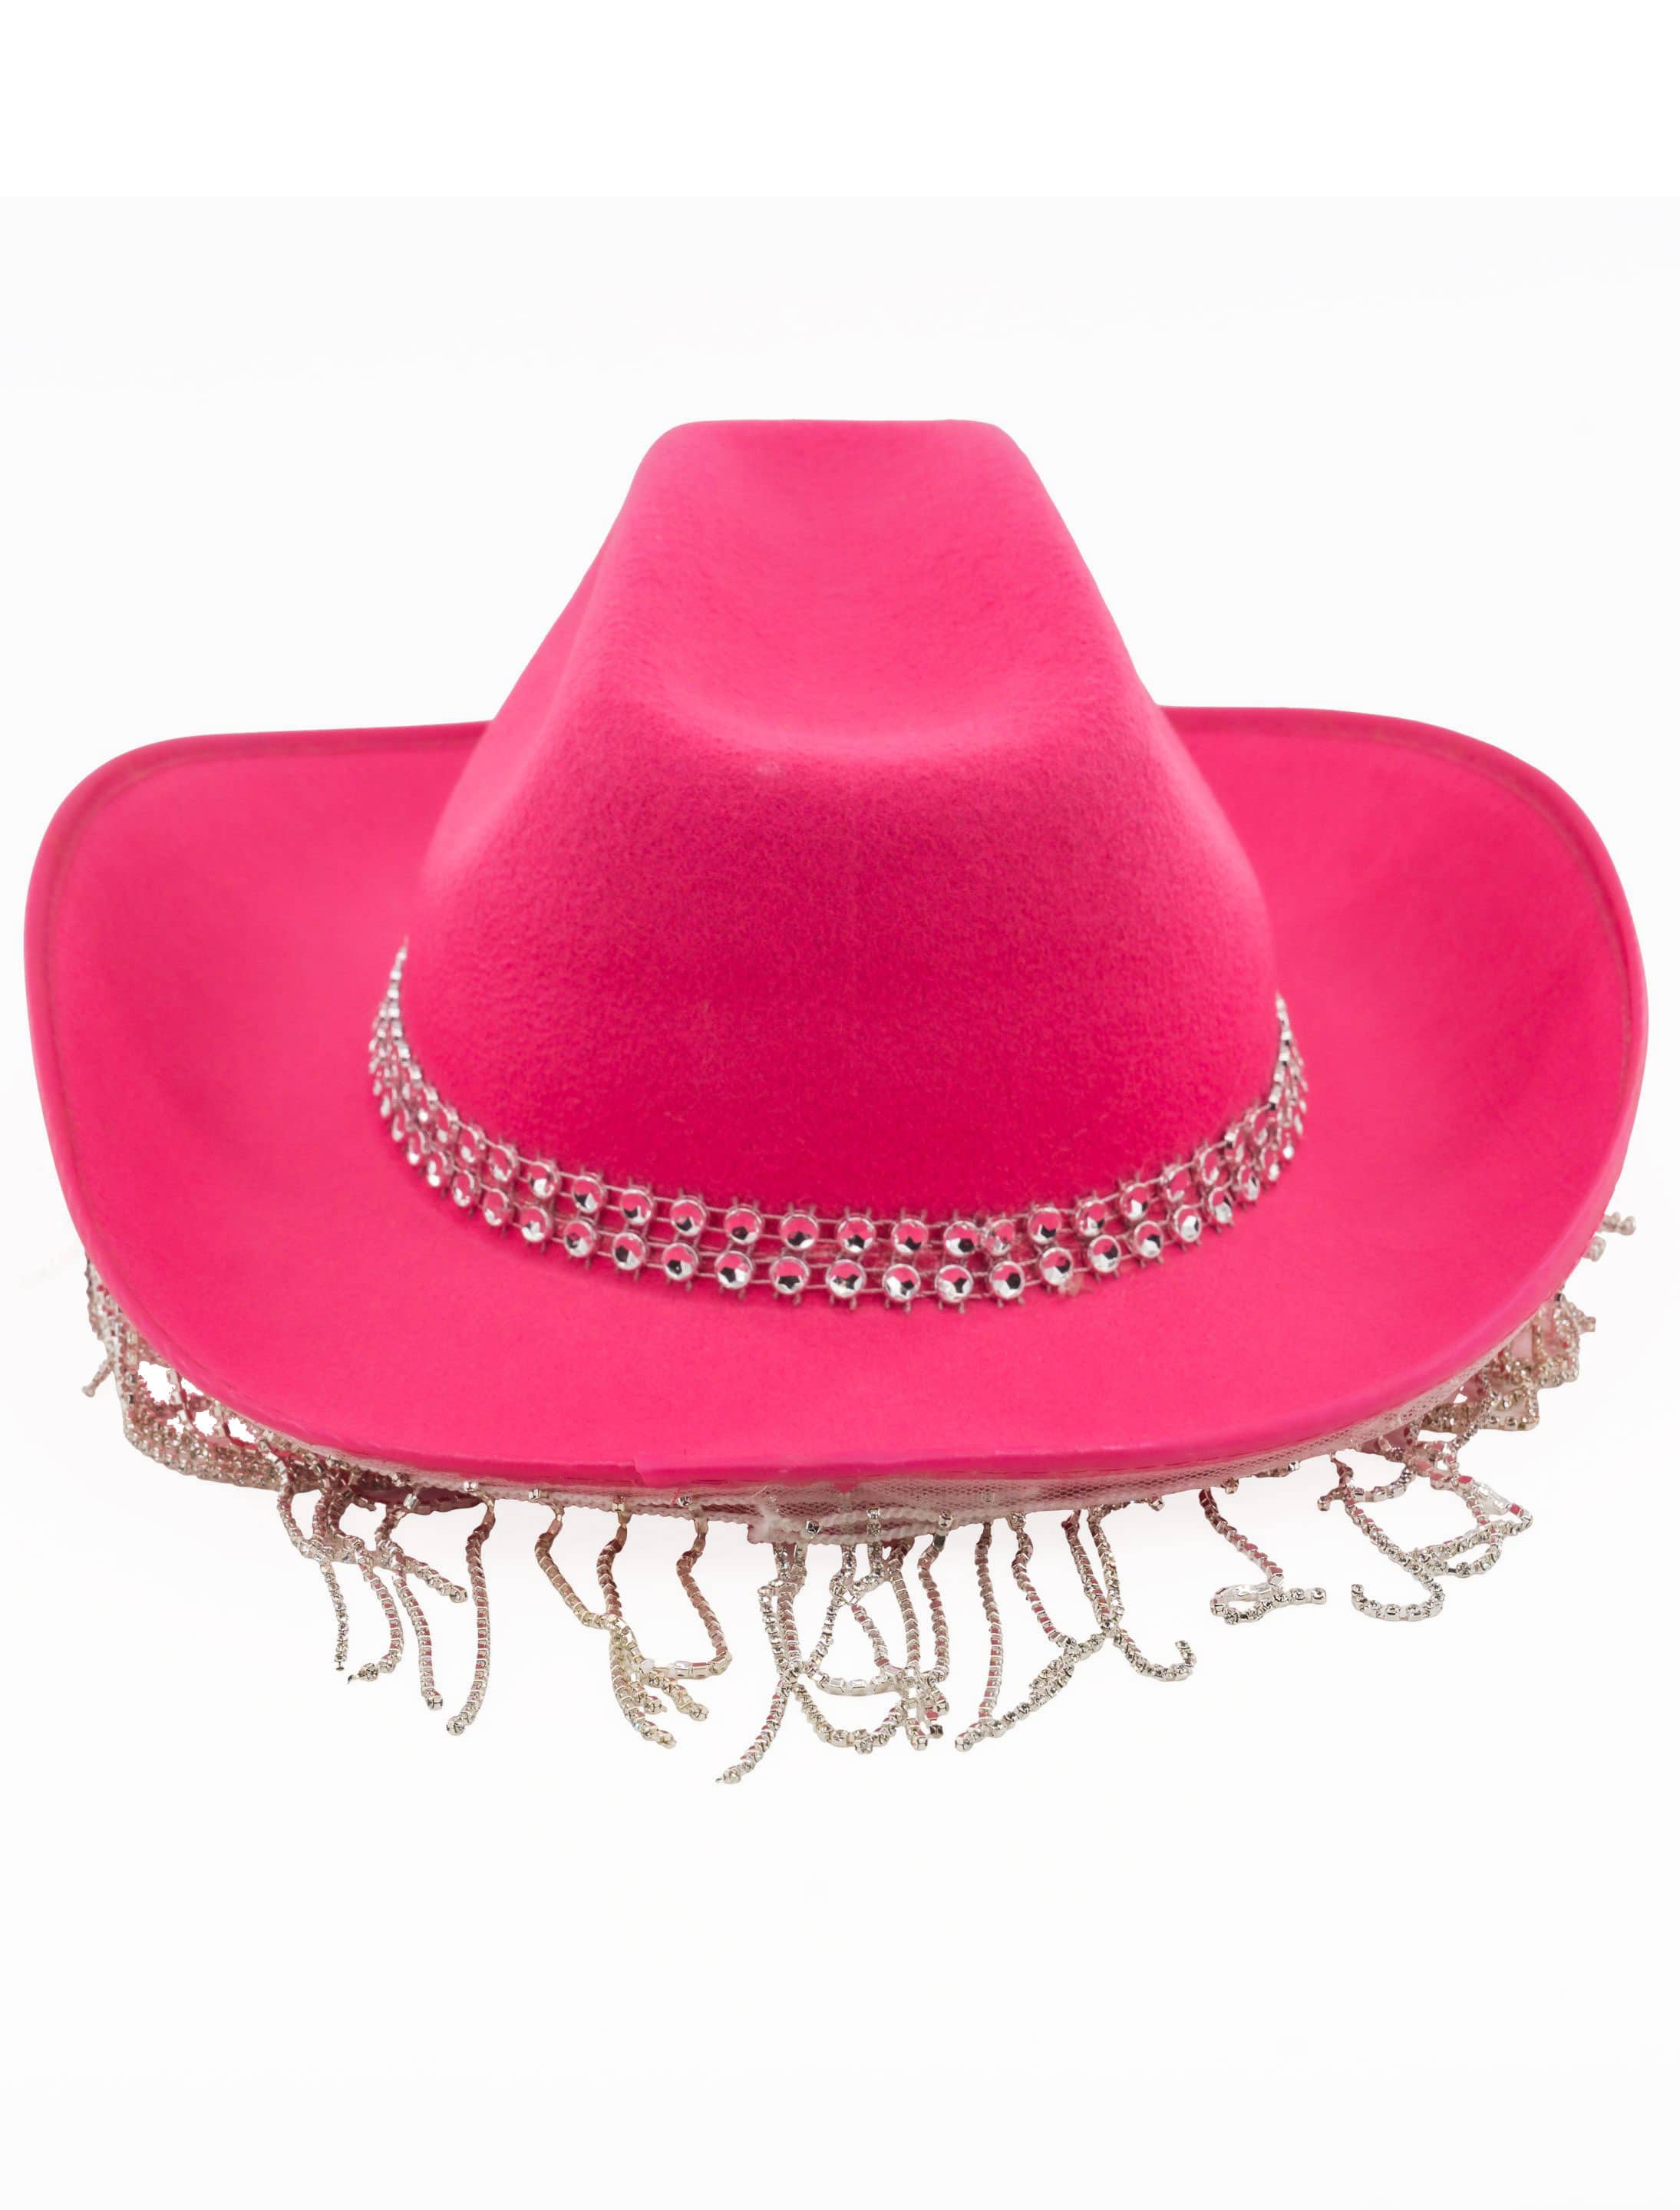 Cowboyhut mit Strassketten pink one size, pink, one size